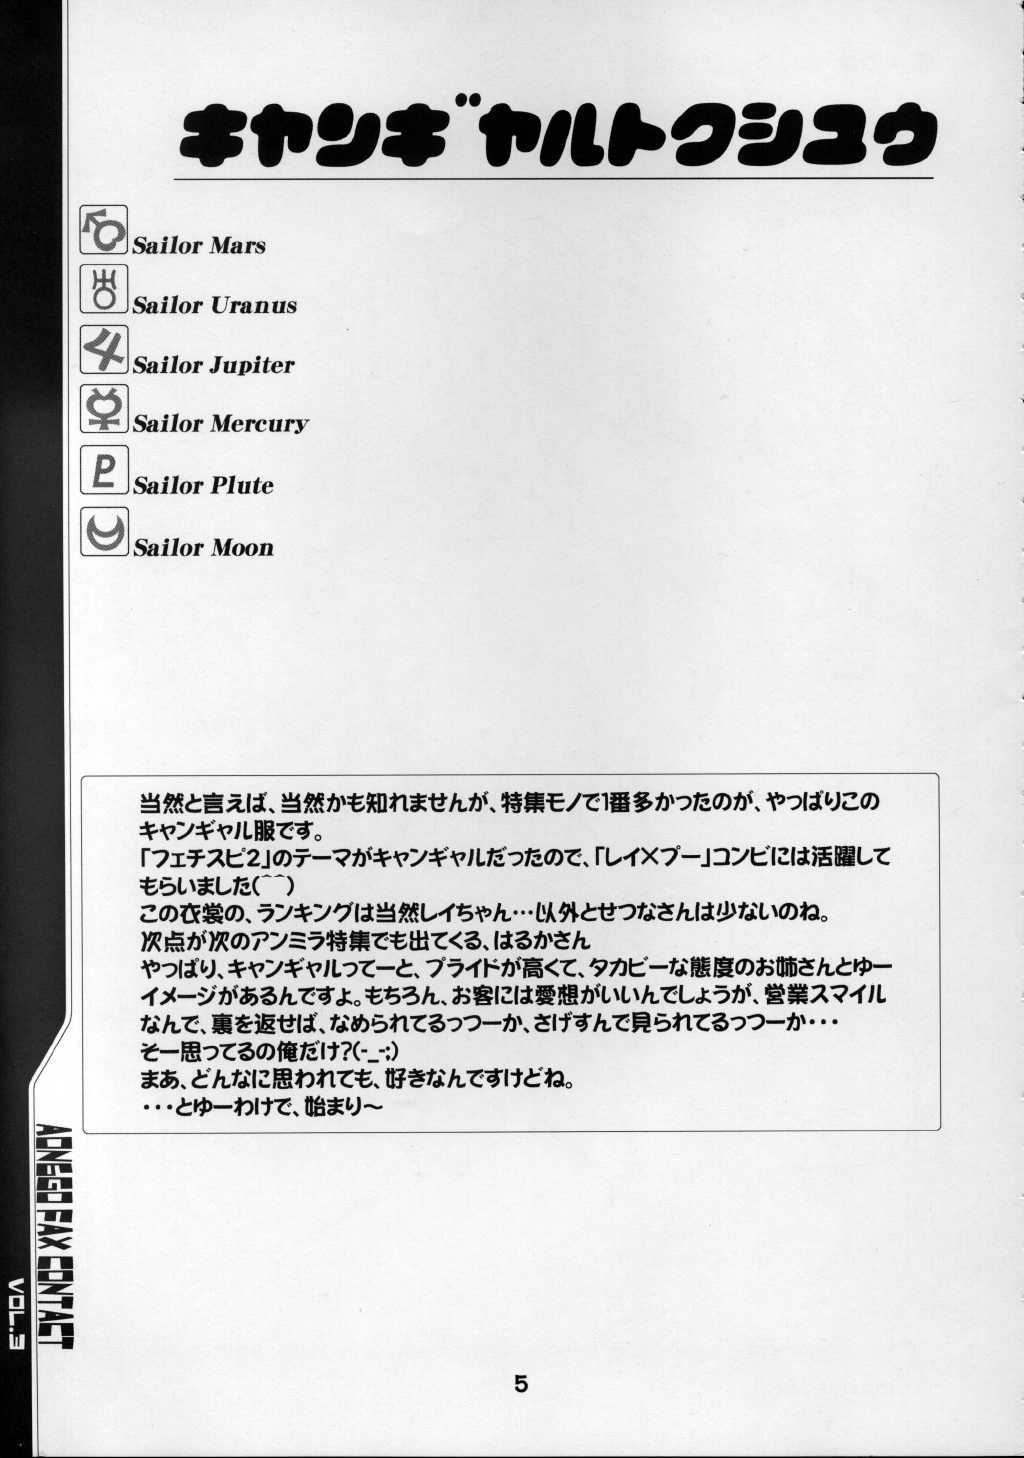 Aon6go Fax Contact Act 3 [Sailor Moon] 